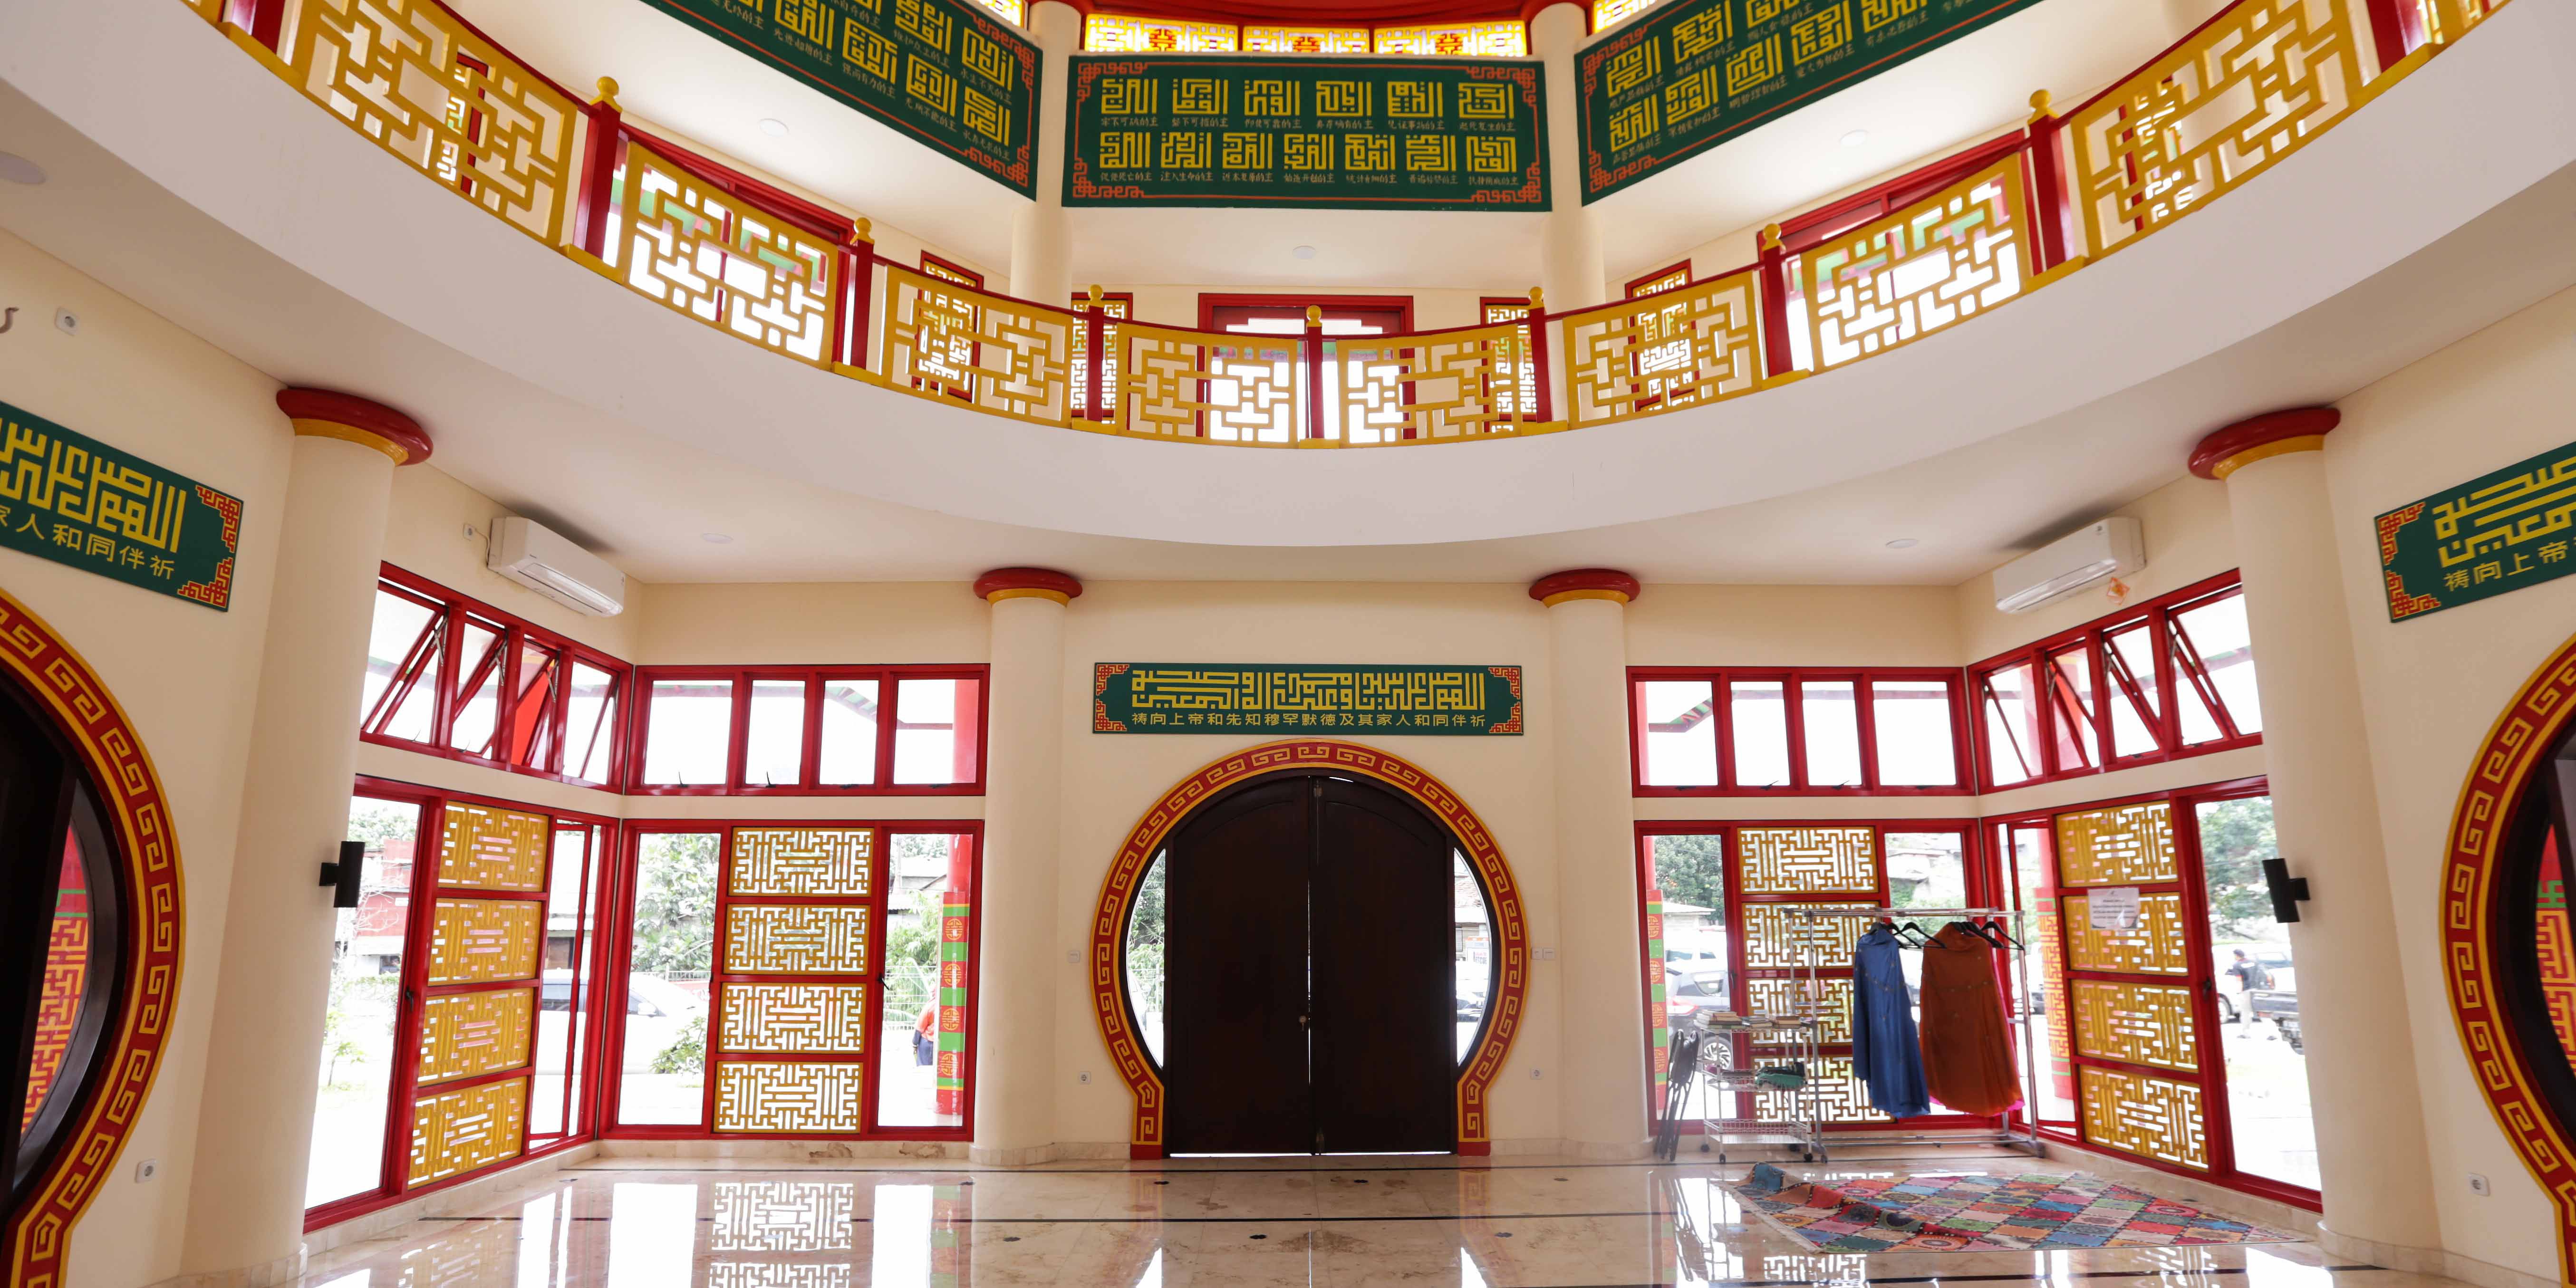 FOTO: Uniknya Masjid Babah Alun yang Dibangun Mualaf Tionghoa